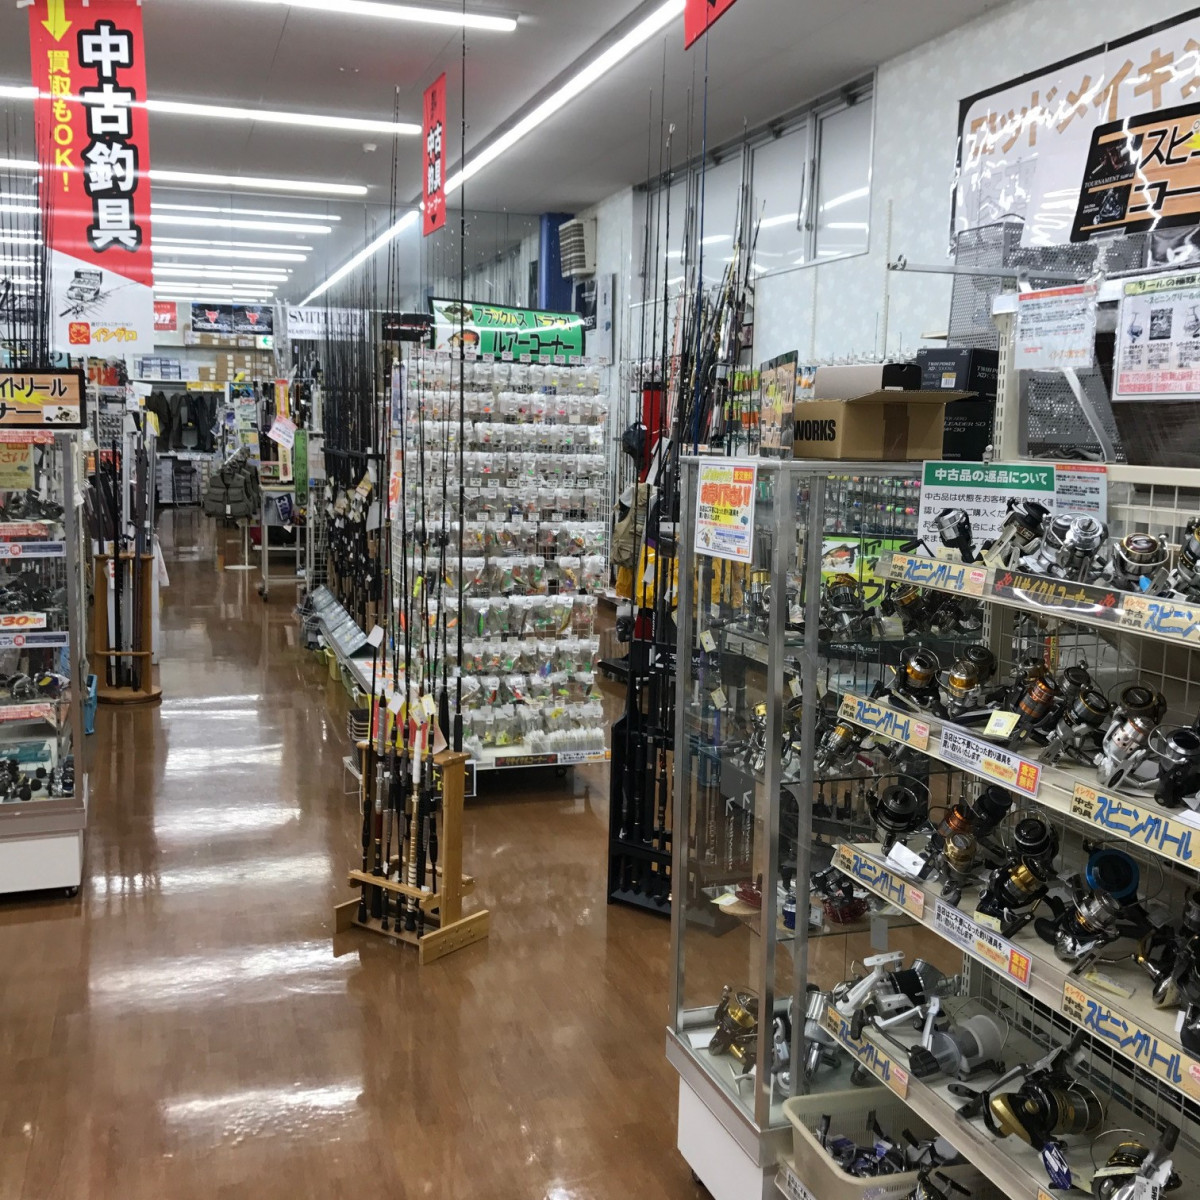 富士店では、釣り具の買取と中古釣り具の販売も行なっています。
ぜひ、買い替え等にご利用して下さい！